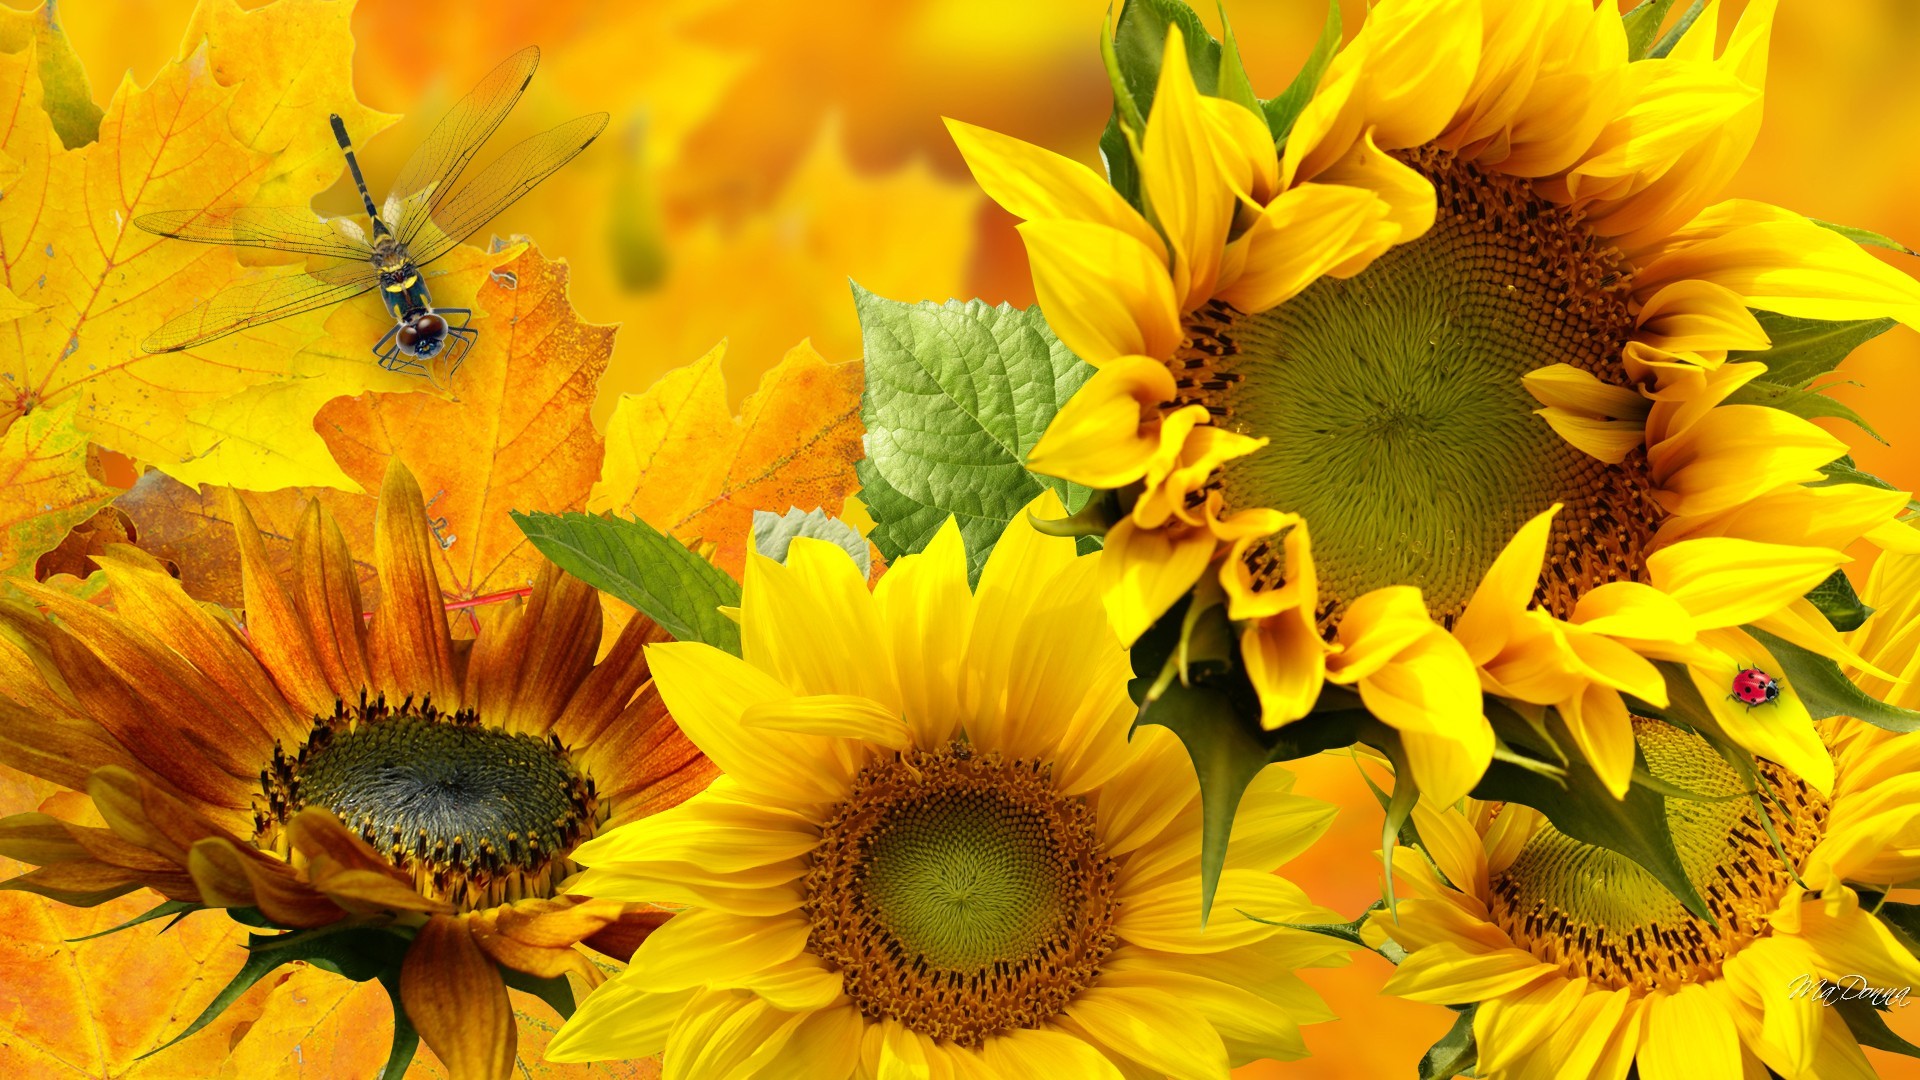 Descarga gratuita de fondo de pantalla para móvil de Flores, Flor, Artístico, Girasol, Libélula, Flor Amarilla.